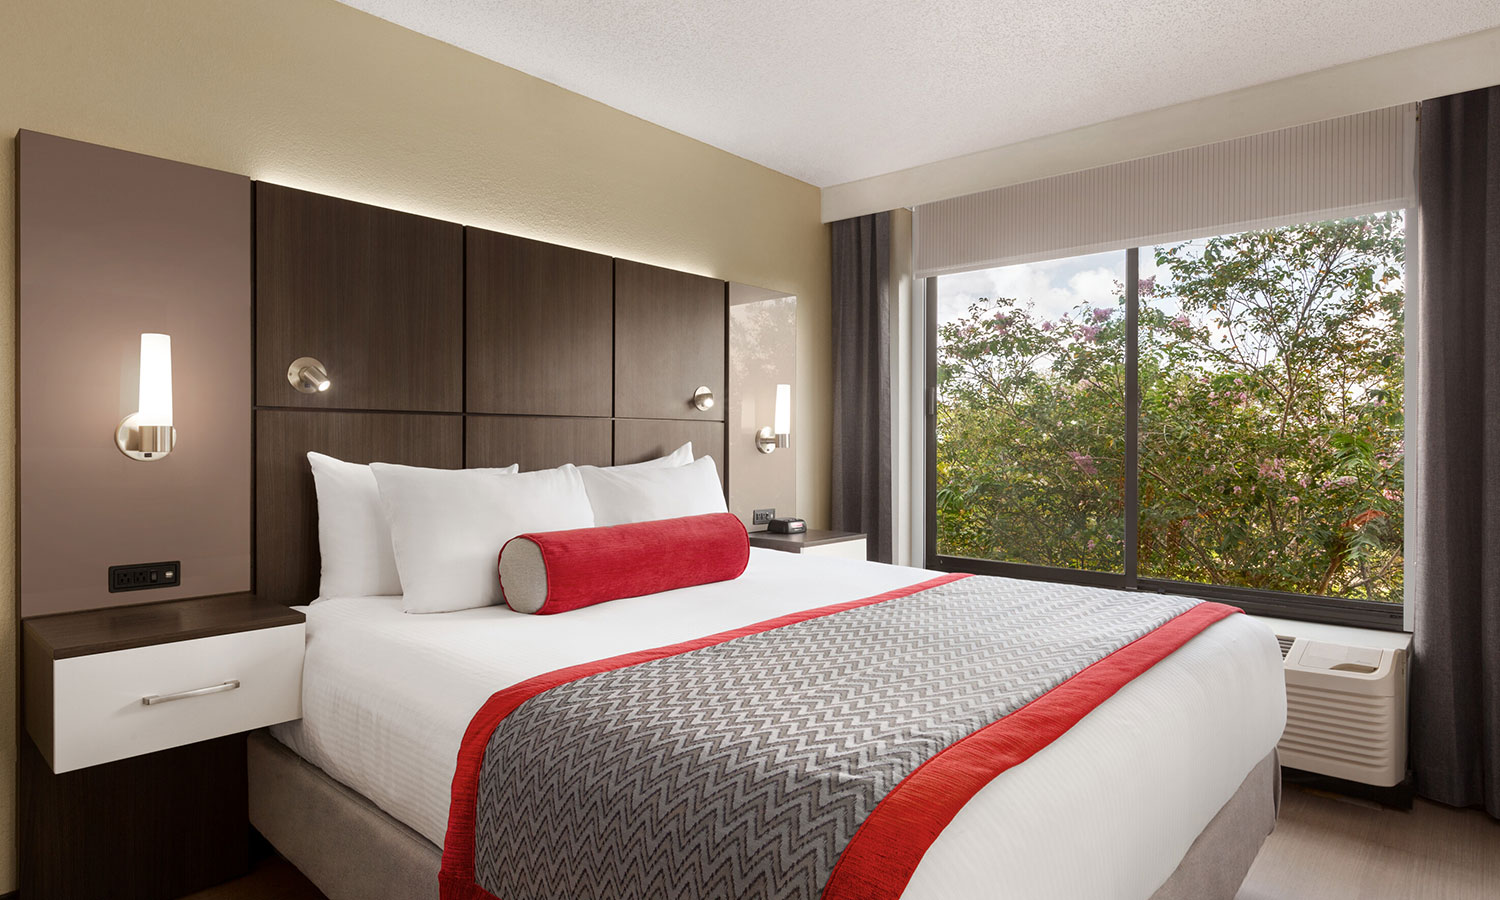 Ramada Suites Orlando Airport Hotel Corporate Travel Program